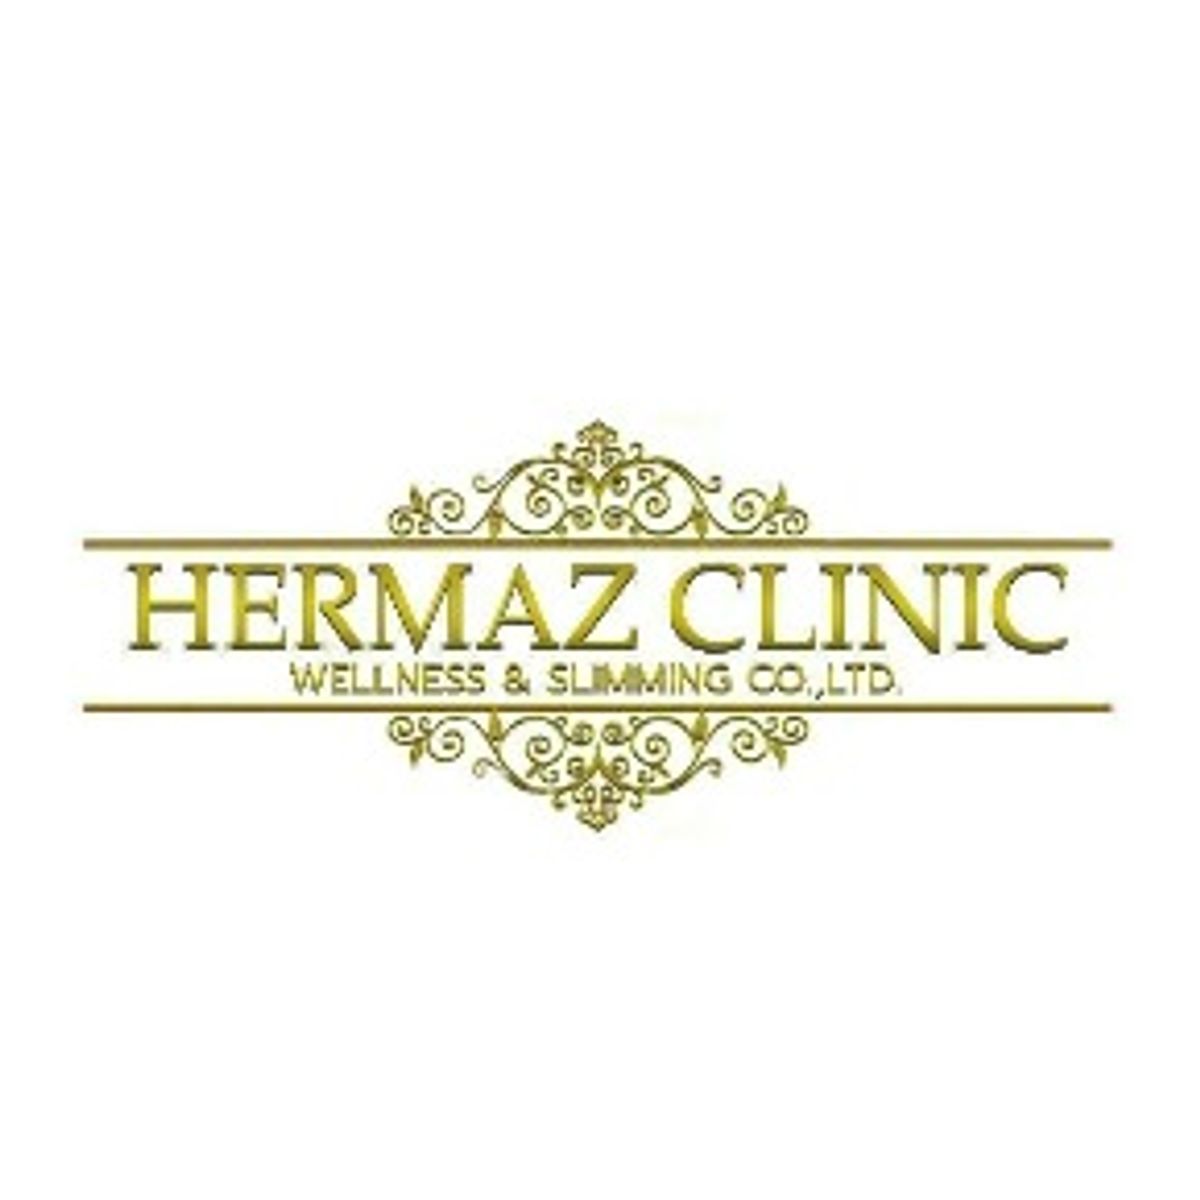 Hermaz Clinic เซ็นทรัลพลาซา ปิ่นเกล้า สถานที่ โปรโมชั่น ลดราคา เวลาเปิดปิด  - Sale Here